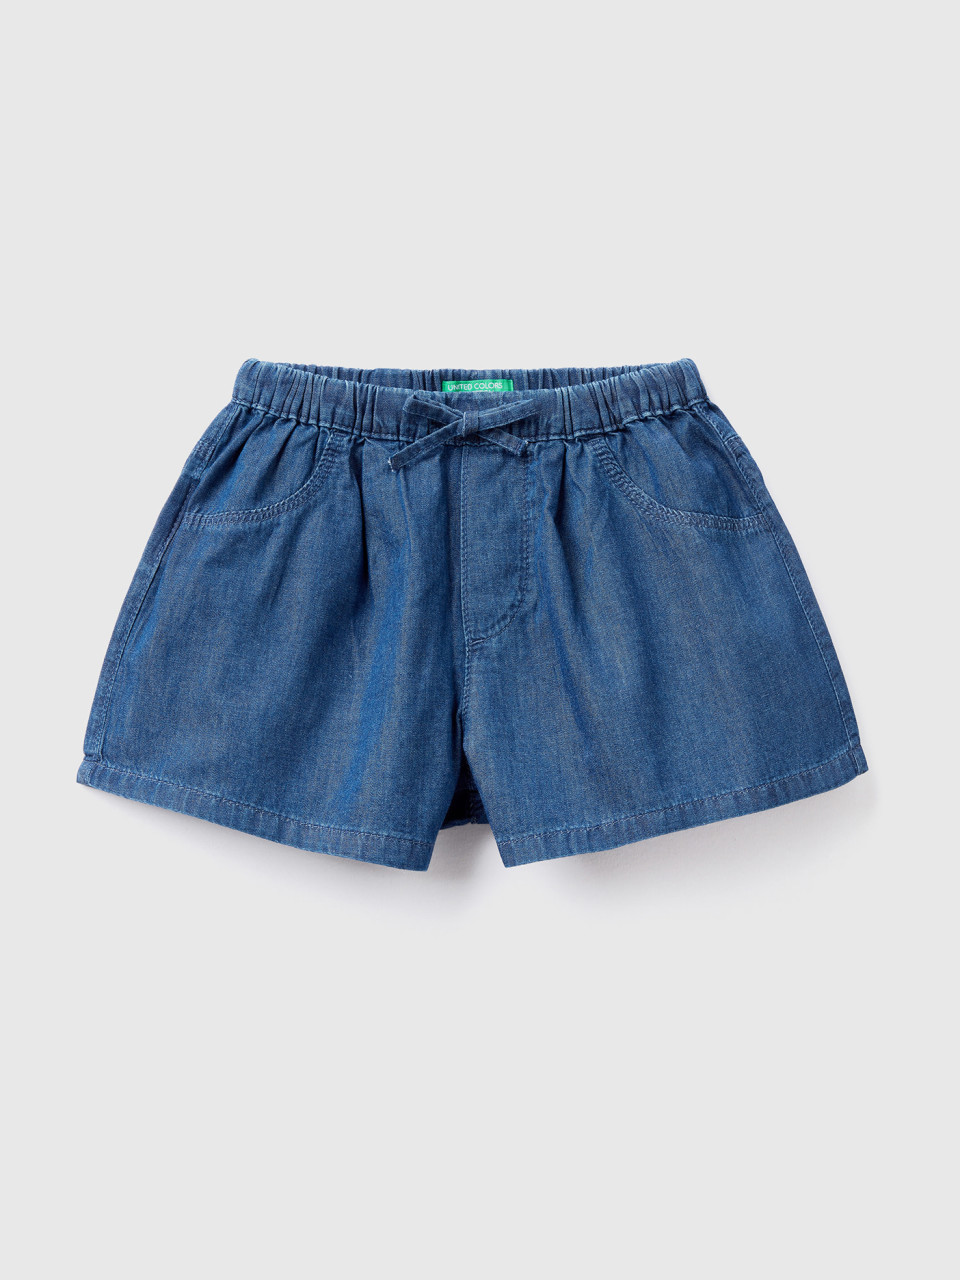 Benetton, Lightweight Denim-look Shorts, Blue, Kids